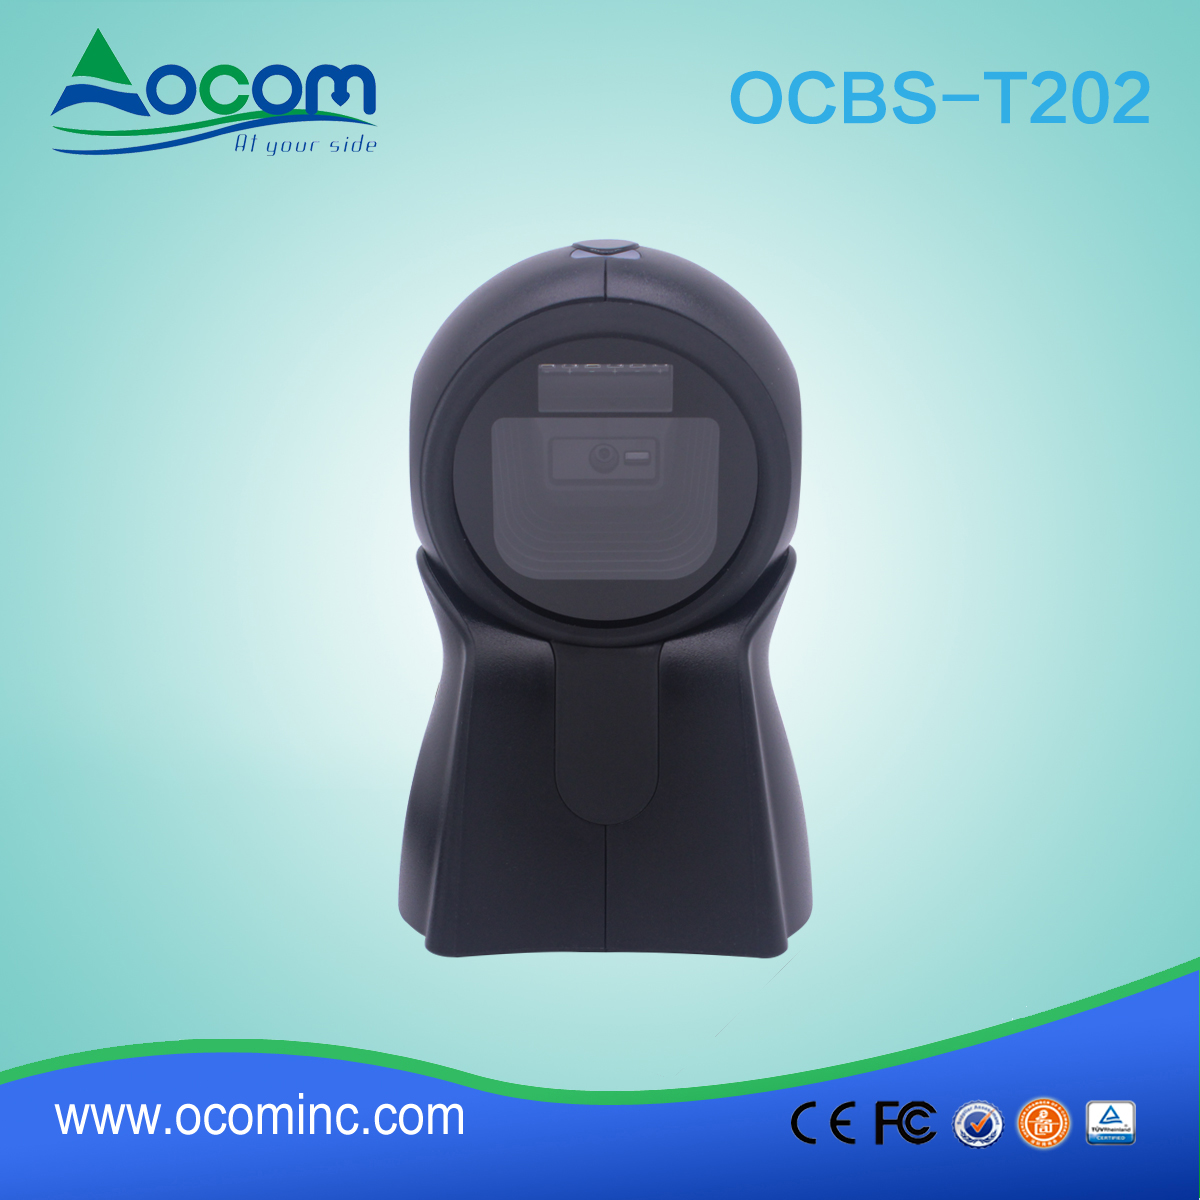 OCBS-T202 Image 2D QR Code Omni kierunkowy skaner kodów kreskowych